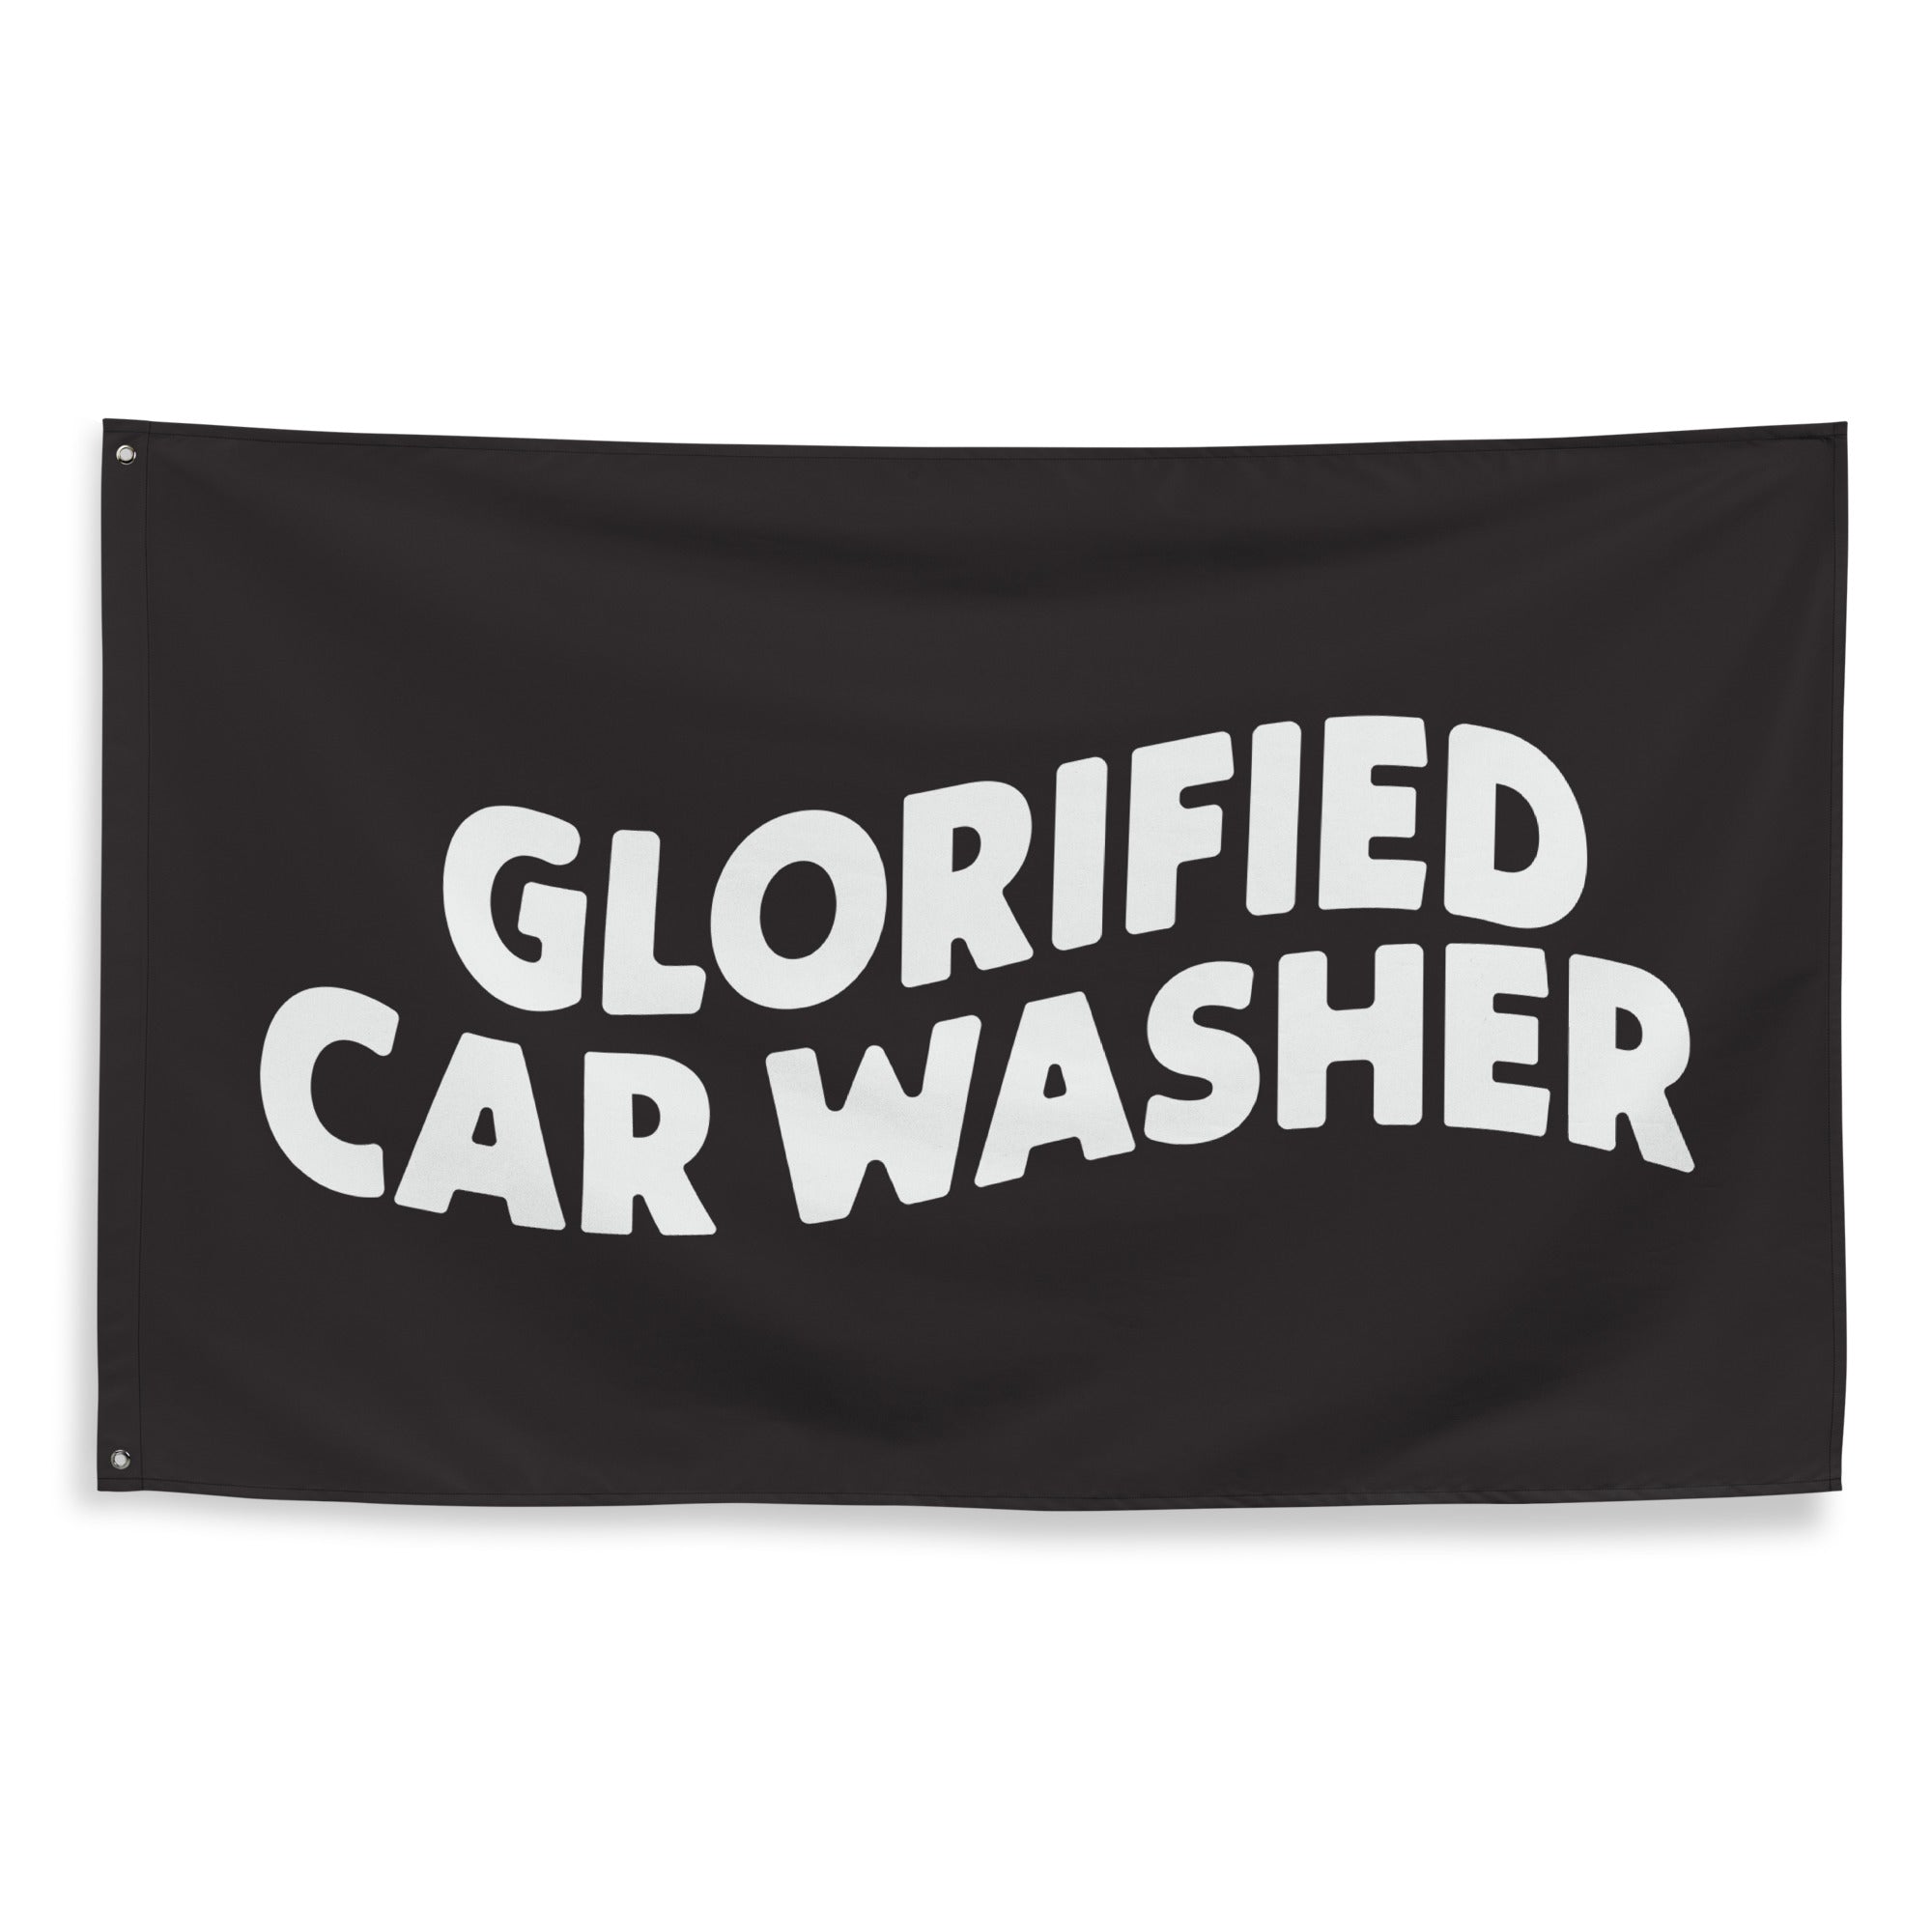 Glorified Car Washer Flag